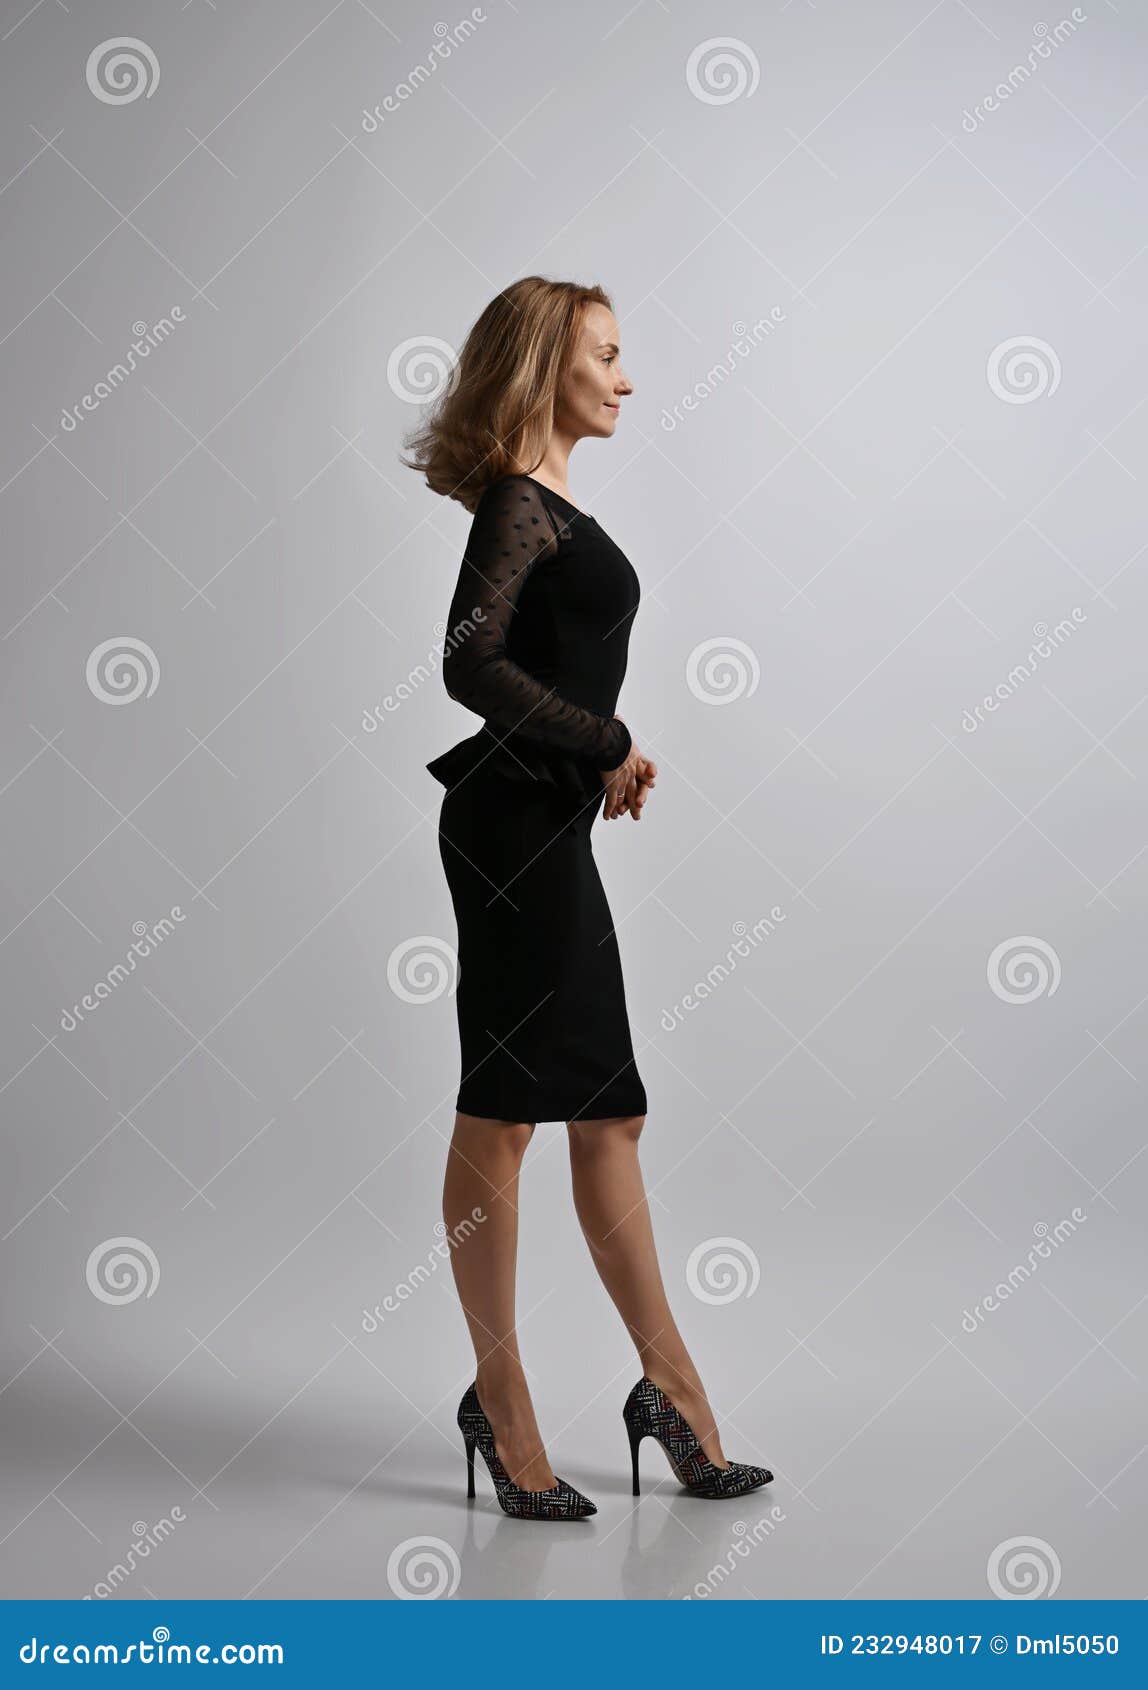 Mujer Rubia Delgada Trabajadora De Oficina Con Vestido Negro Formal Y Zapatos Con Tacón Alto Se Para De Lado a La Cámara Imagen de archivo - Imagen manera, semitransparente: 232948017